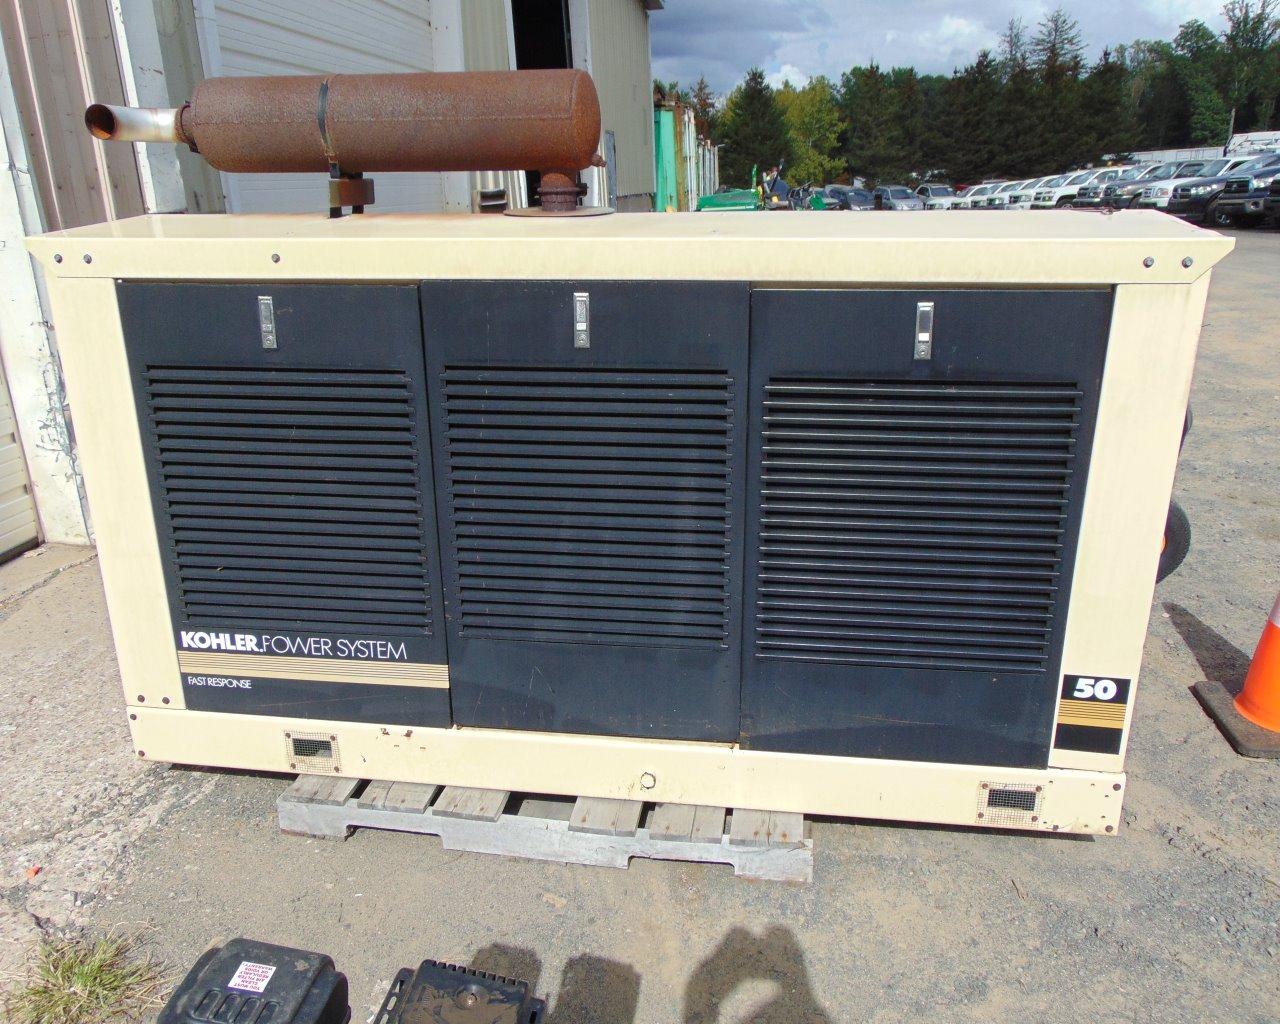 KOHLER Power System Propane Generator, s/n:0662068